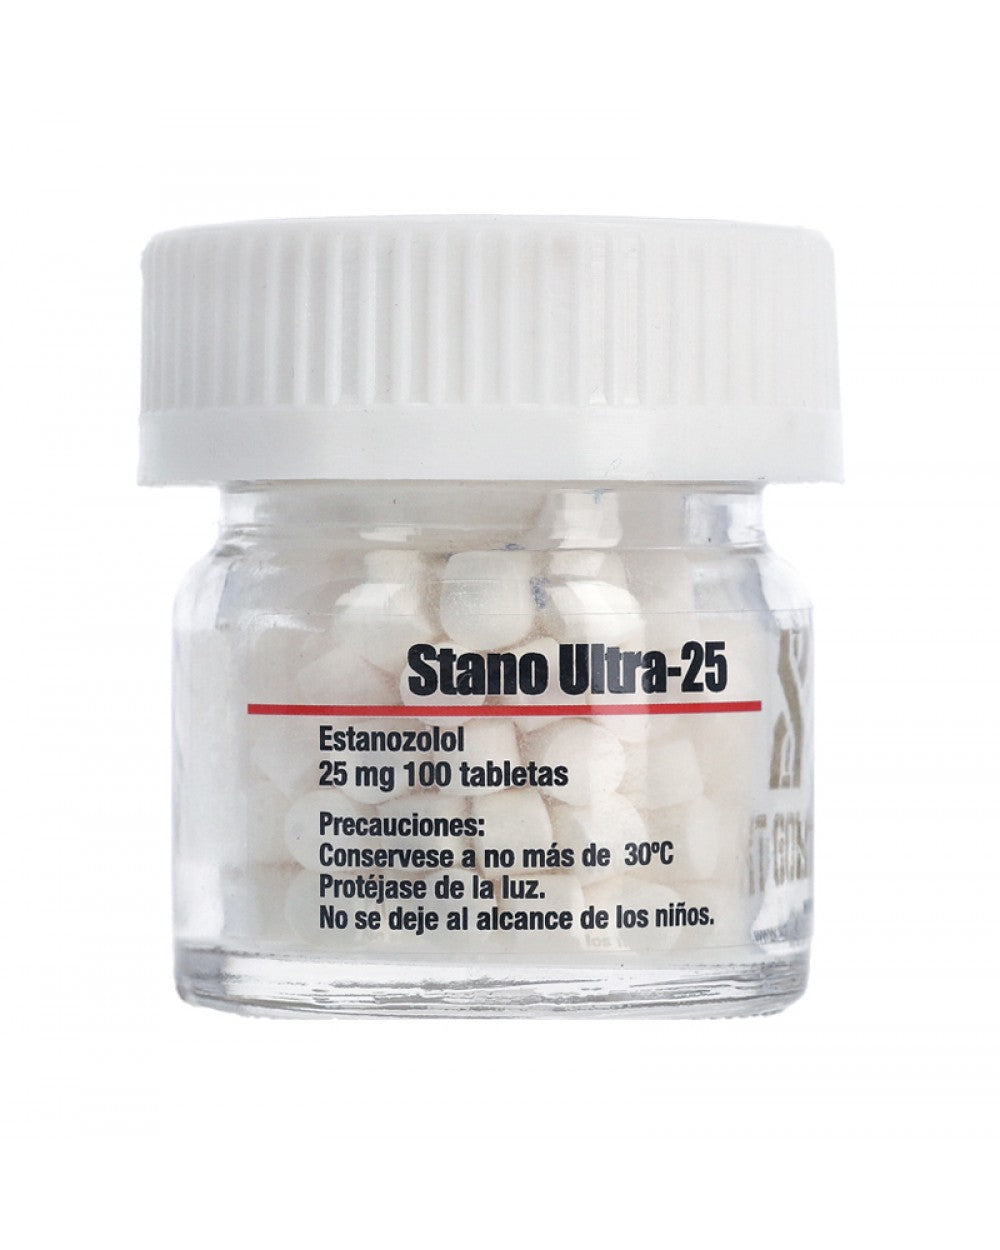 Stano Ultra-25 ORAL | Winstrol (Estanozolol) 25mg 100 tabletas